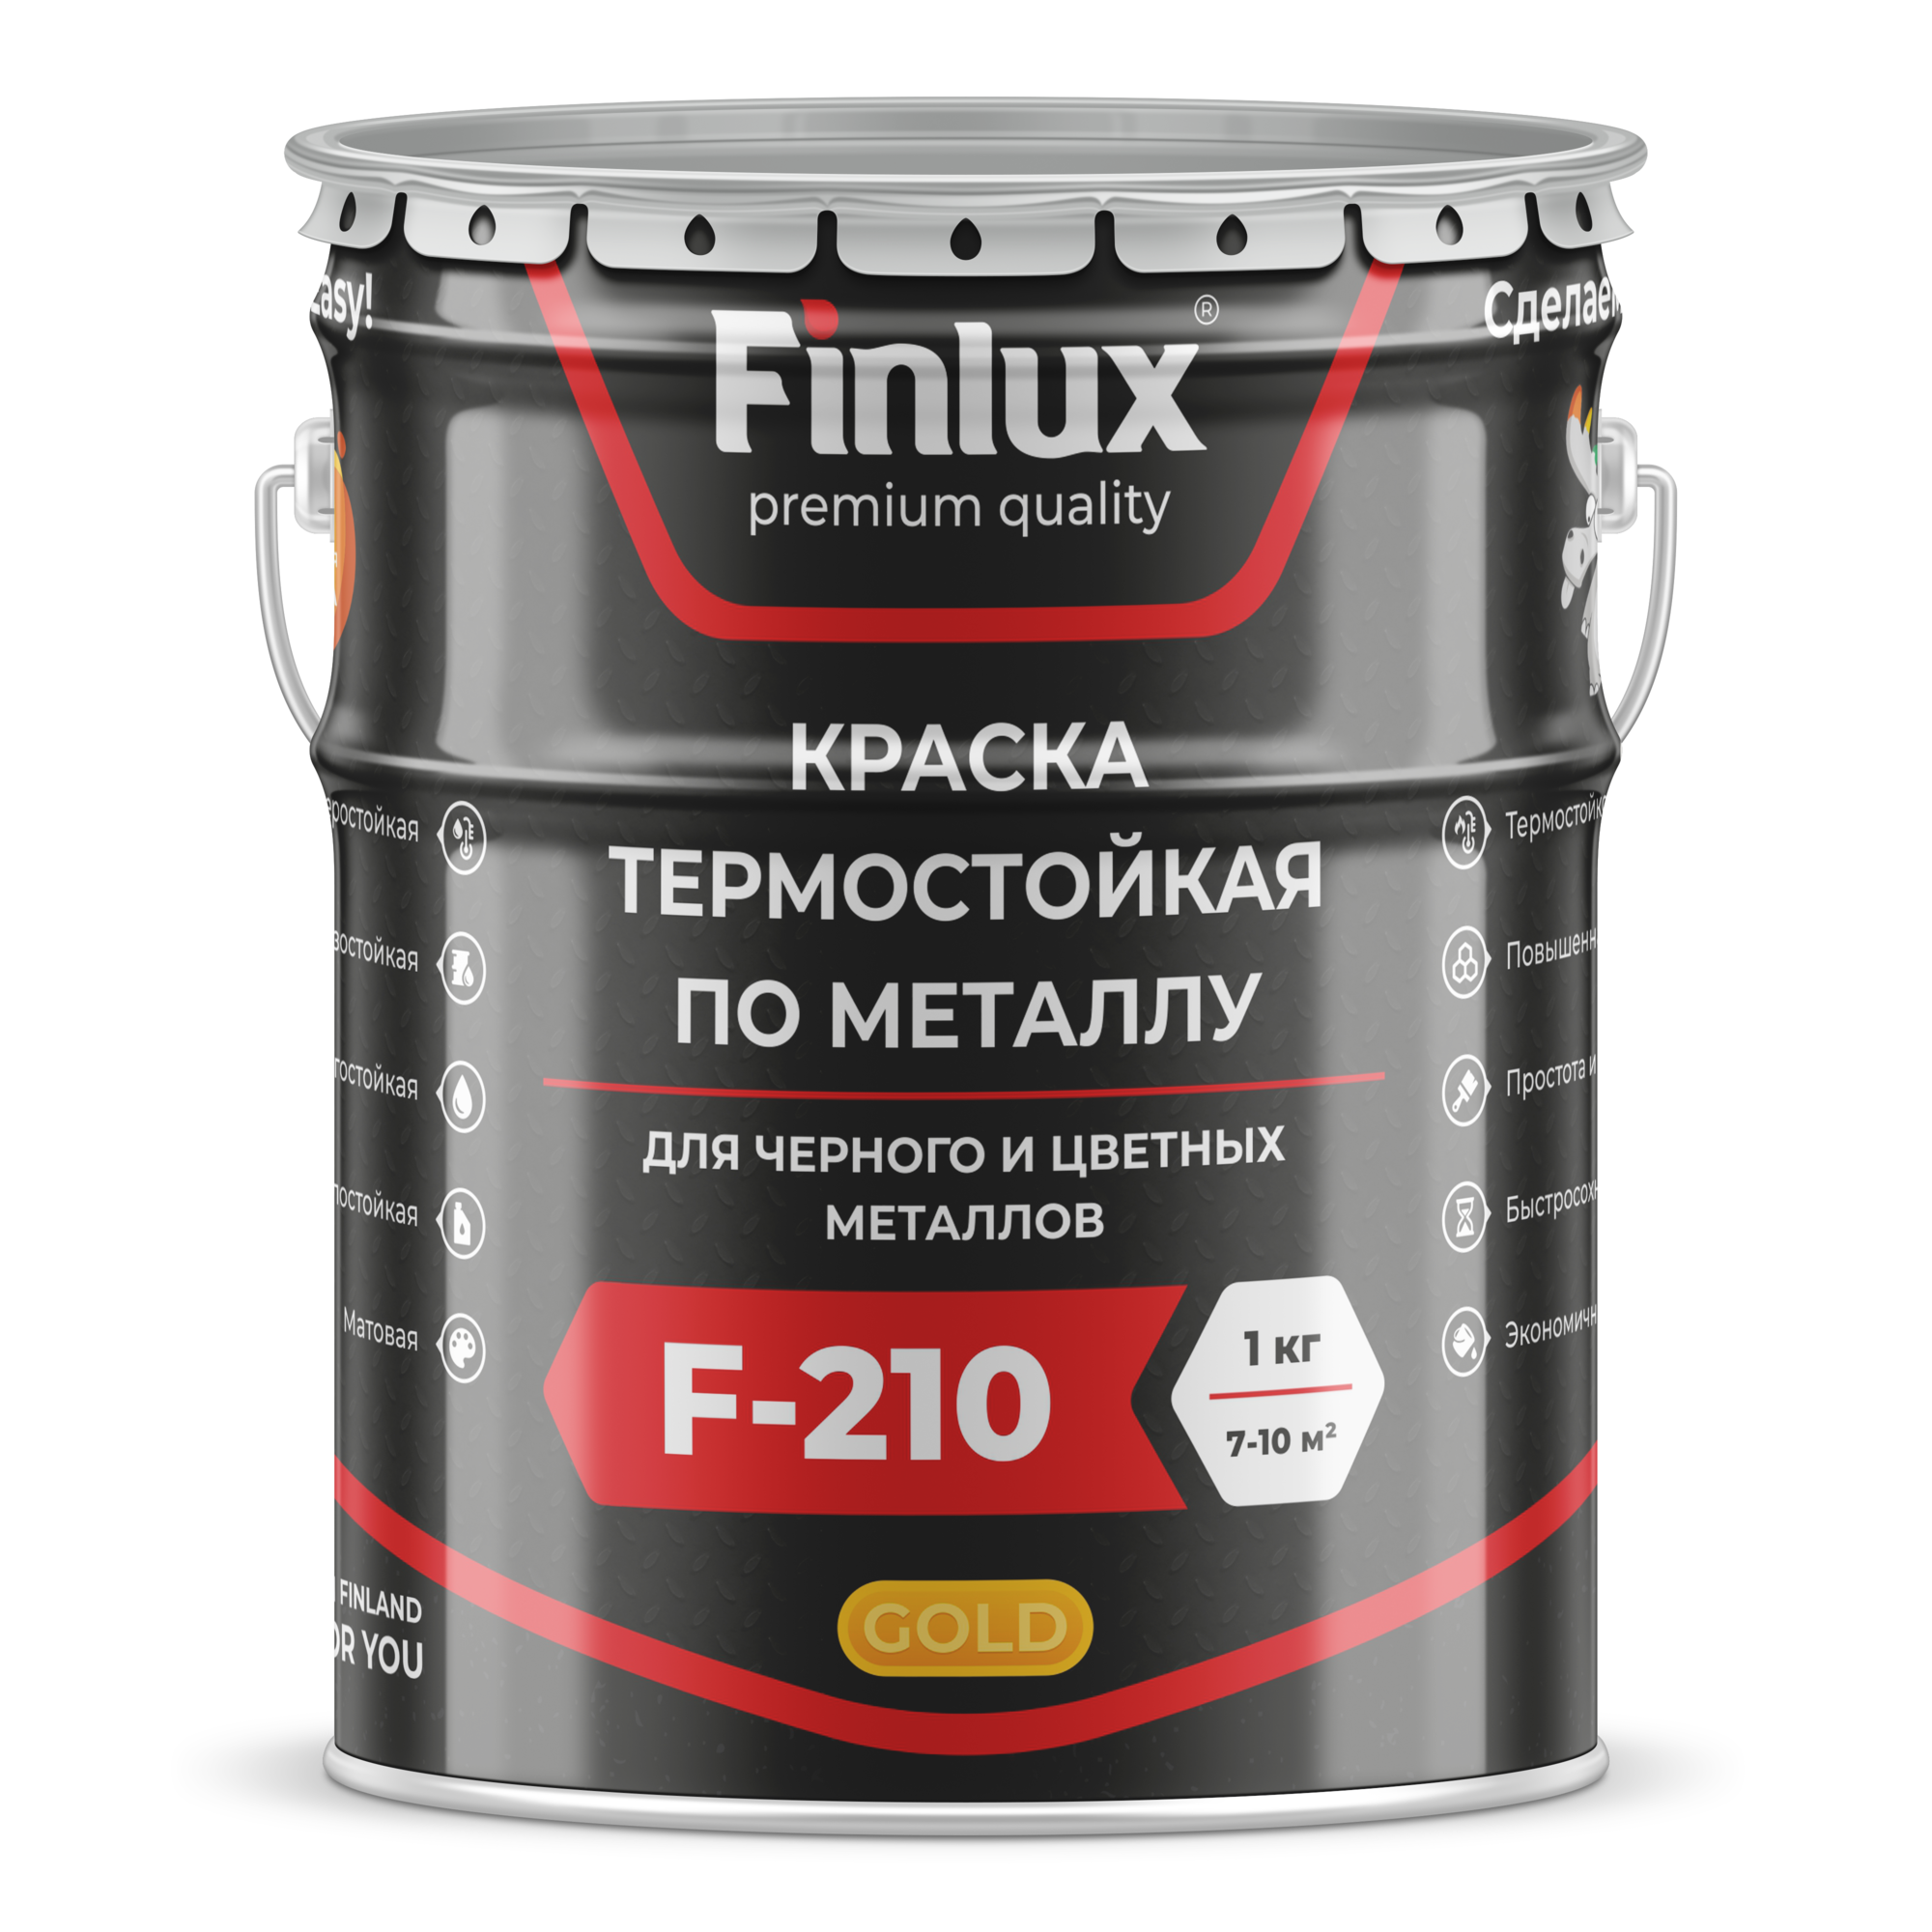 Краска термостойкая для металла Finlux ThermoStop F-210 Gold/ Финлюкс ТермоСтоп Ф-210 Голд ral 7040, 20 кг